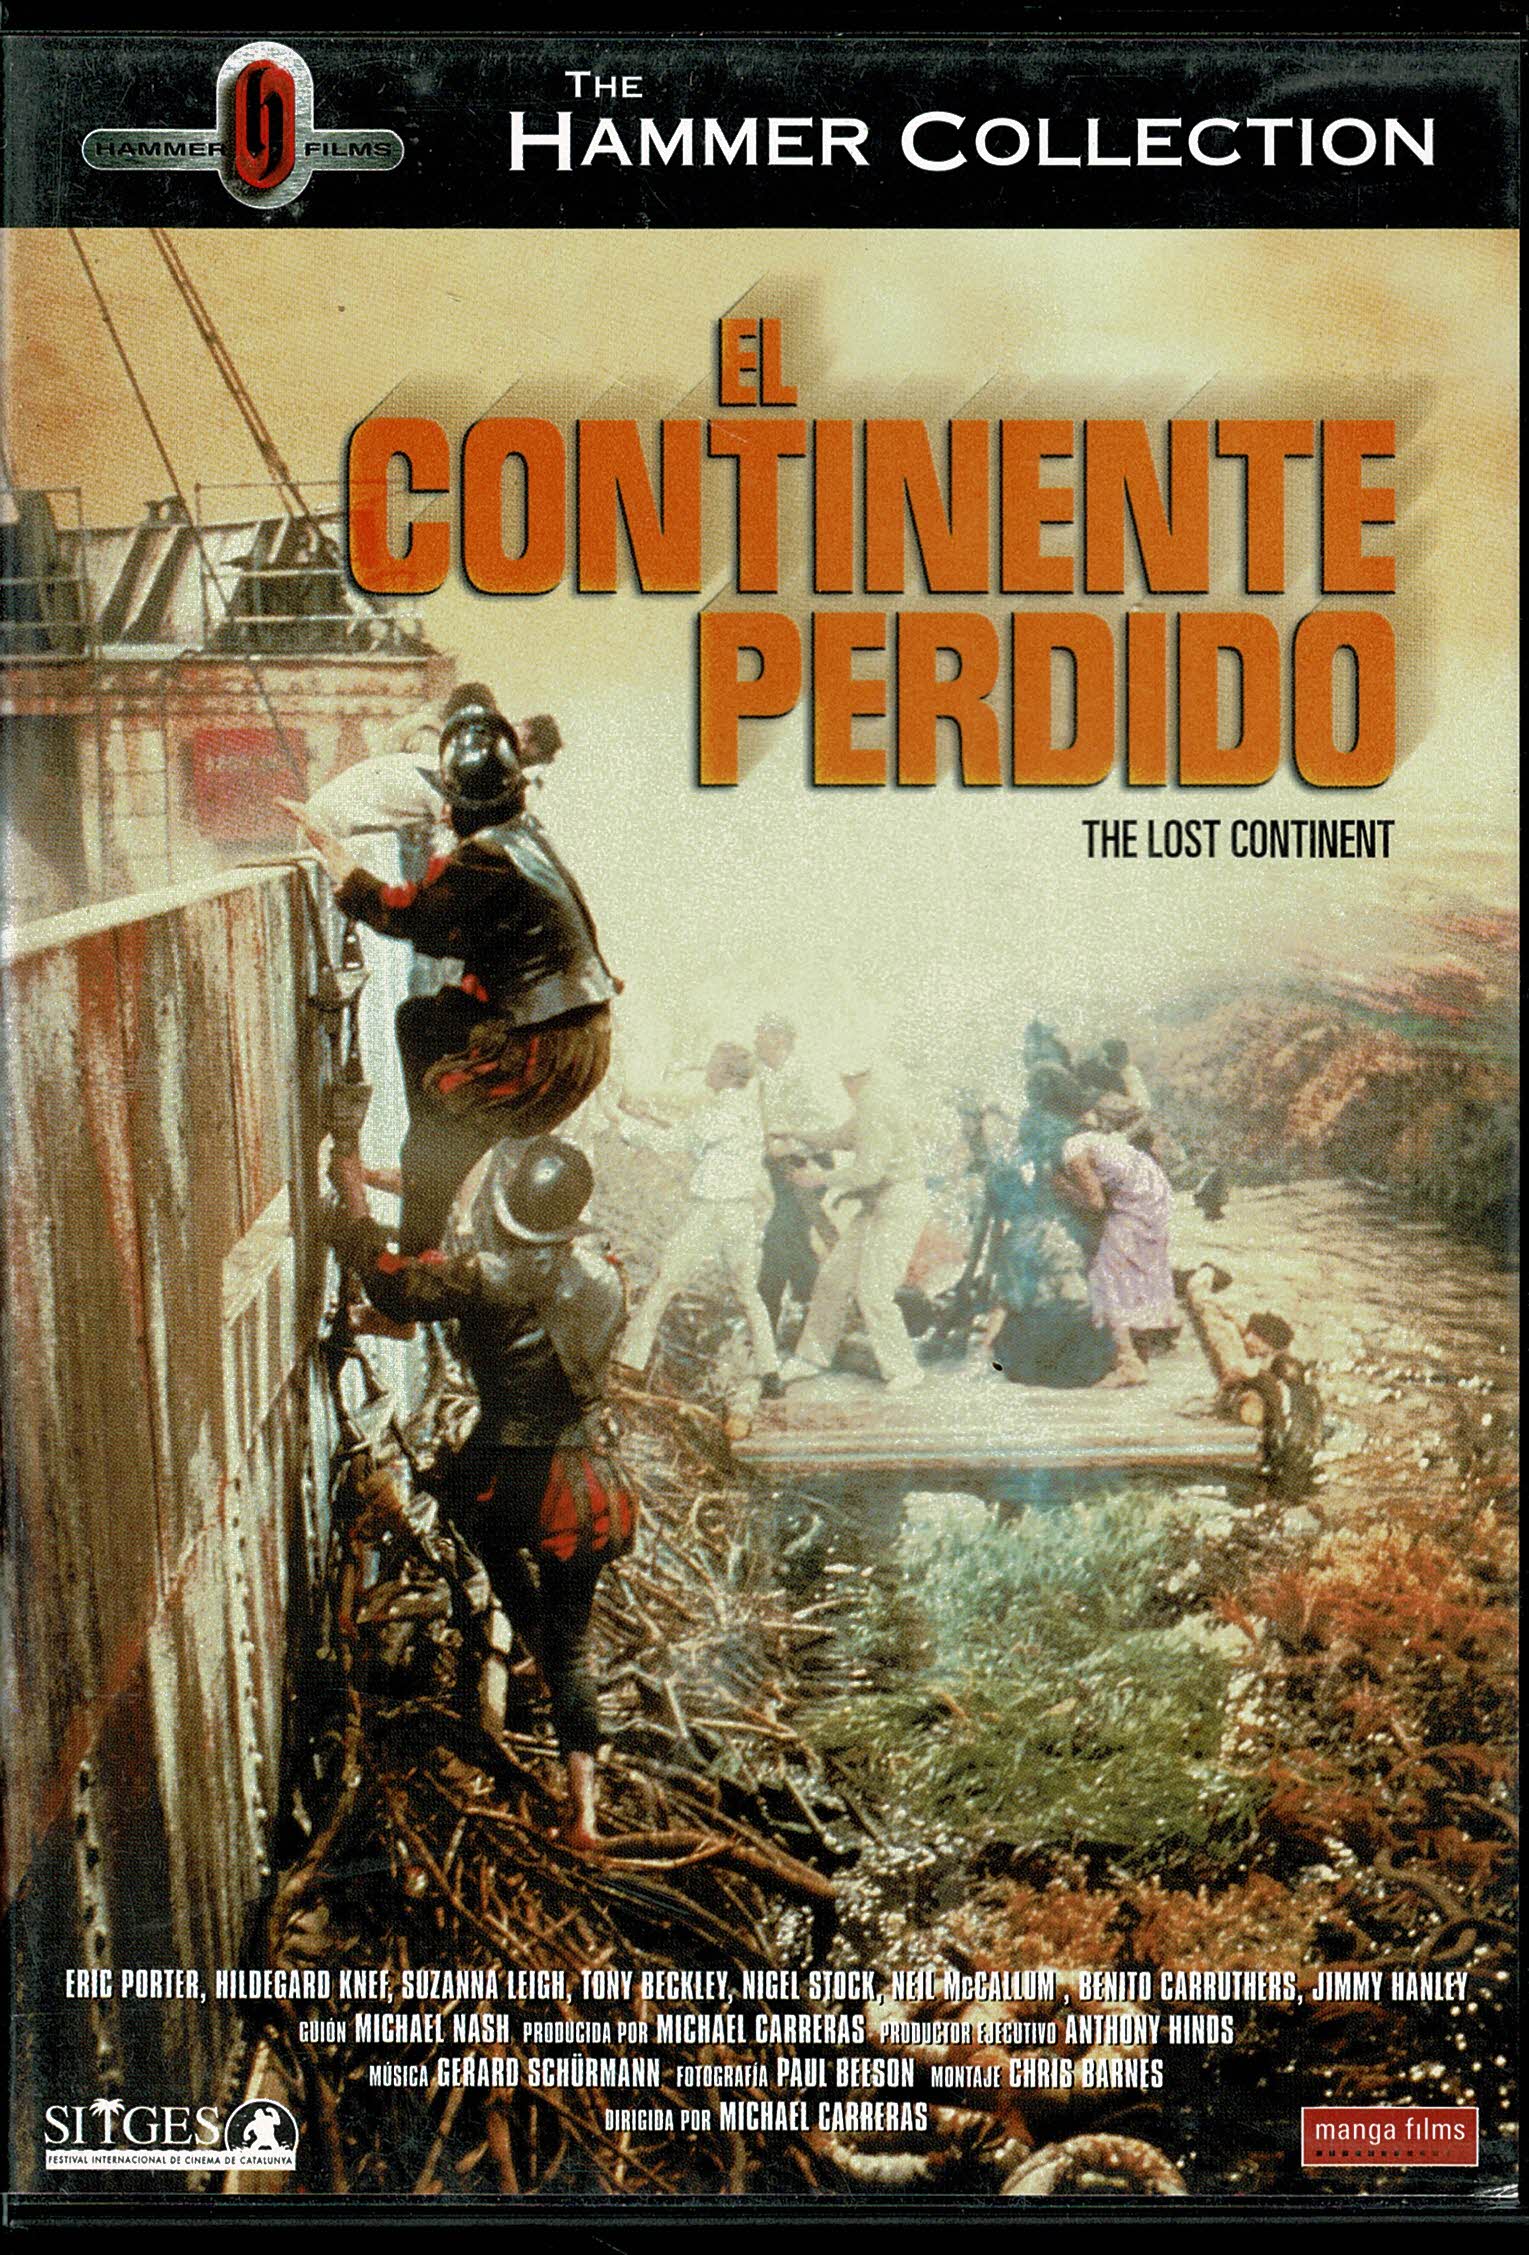 El Continente Perdido   (1968) Hammer